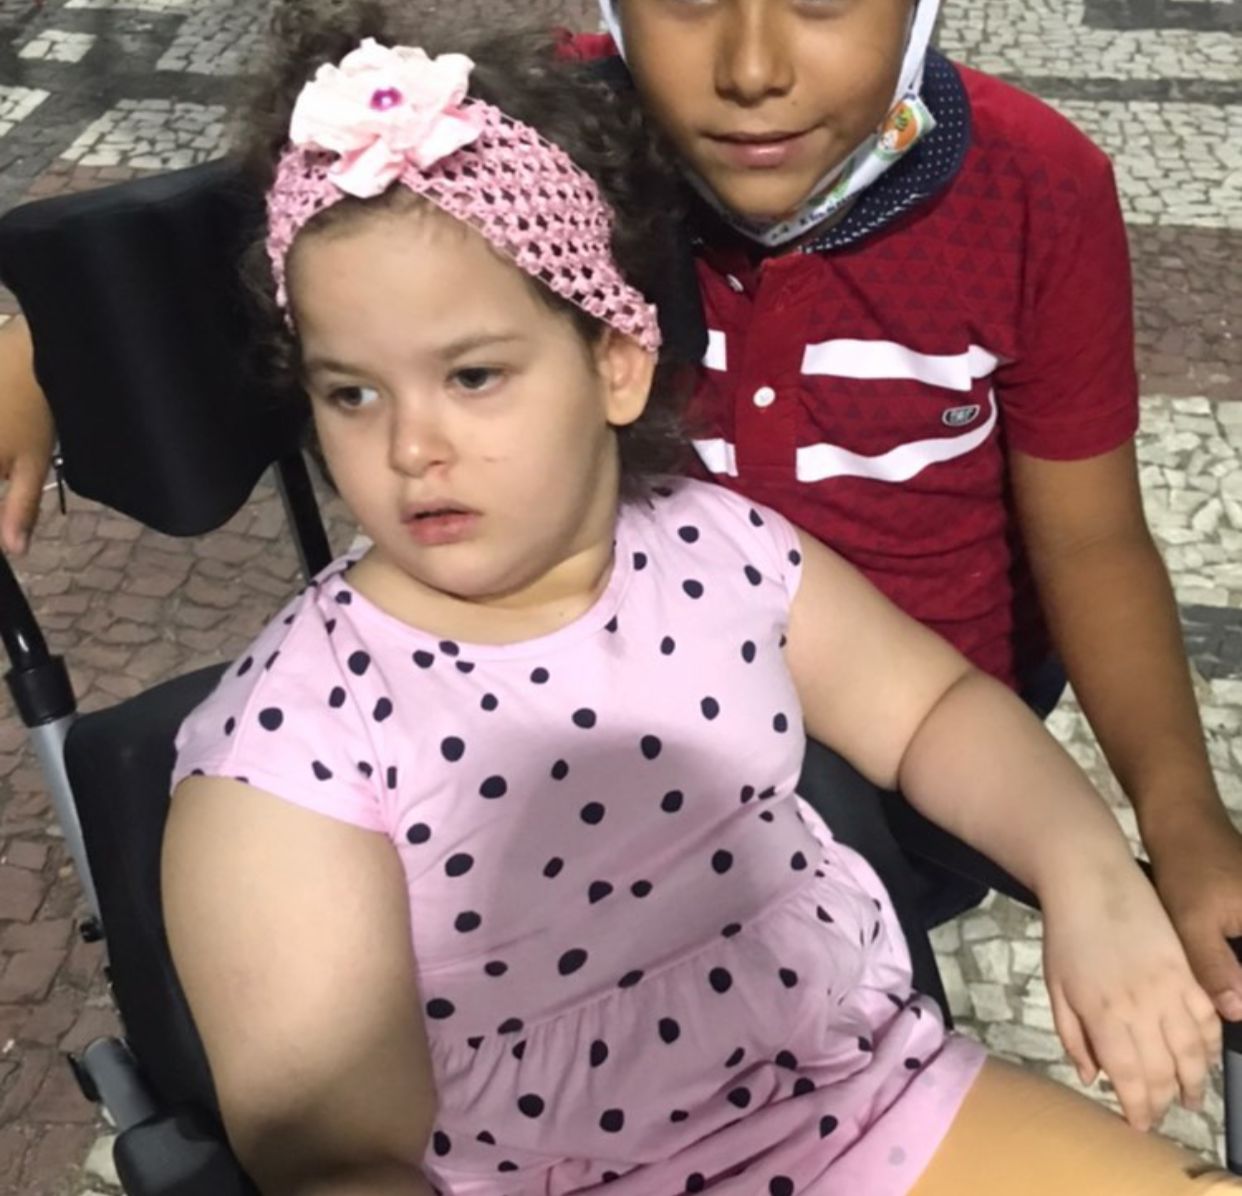 TRAGÉDIA: Criança cadeirante morre carbonizada em incêndio na cidade de Iguatu, no Ceará